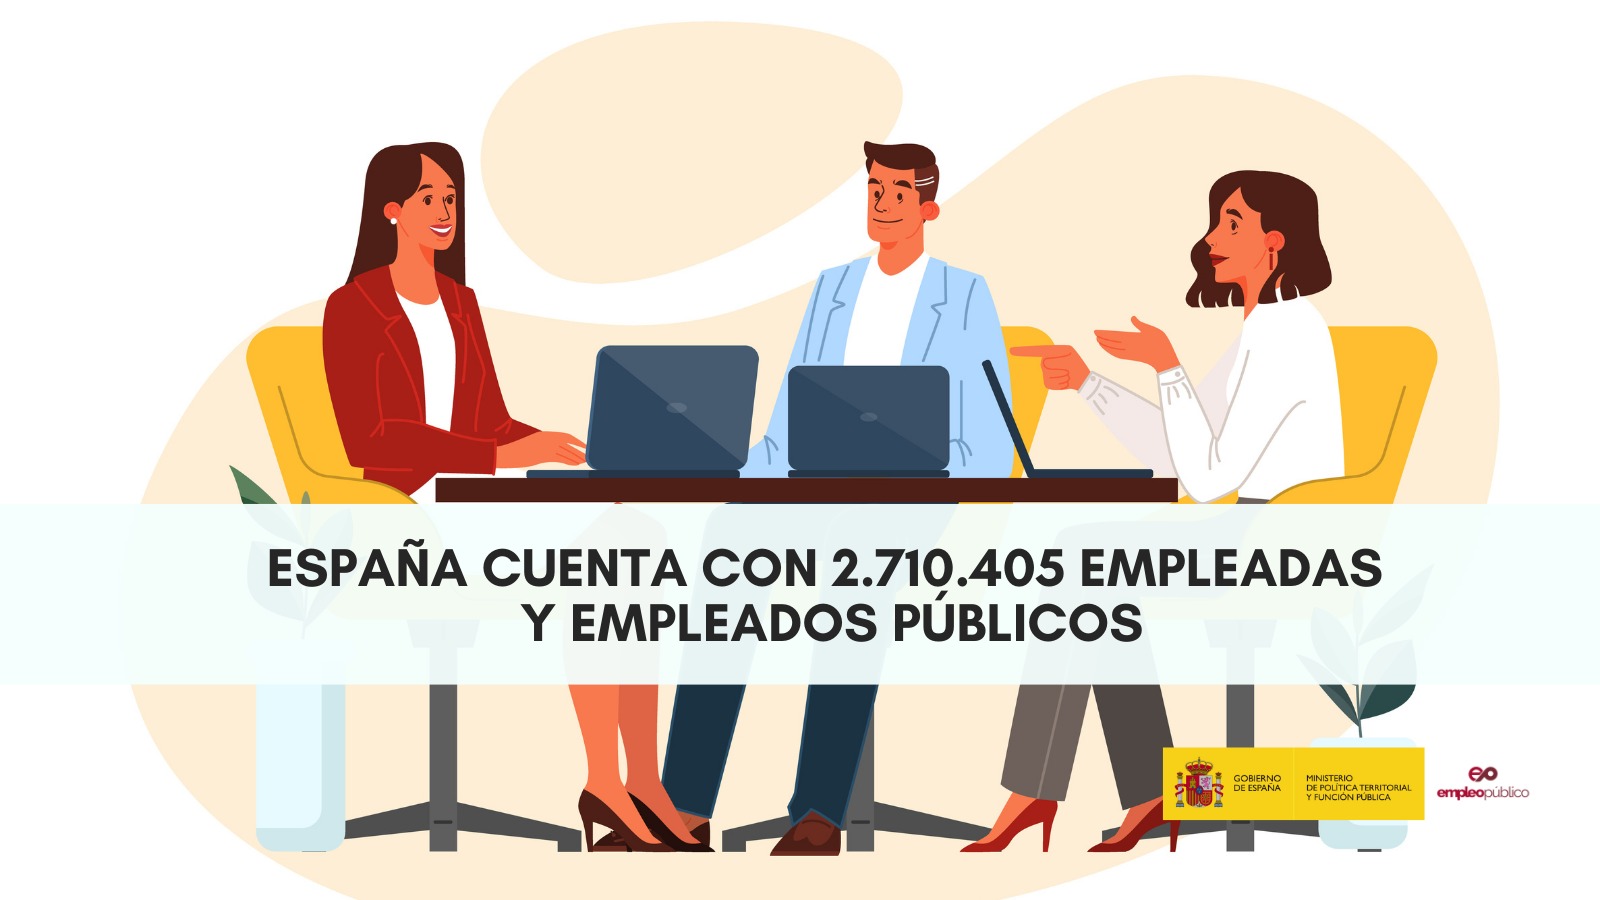 El número de empleadas y empleados públicos en España asciende a 2.710.405